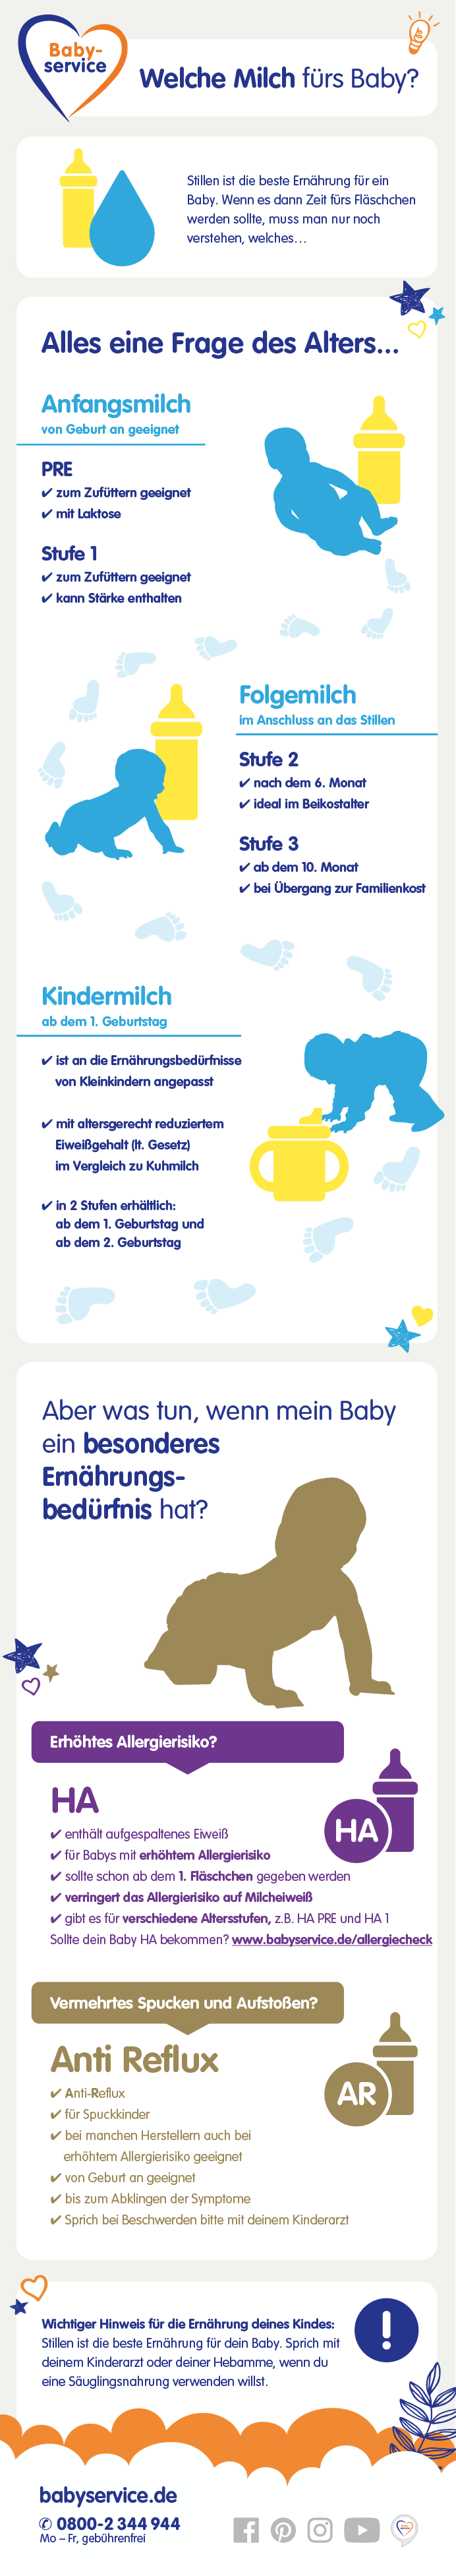 Die richtige Babymilch | Babyservice